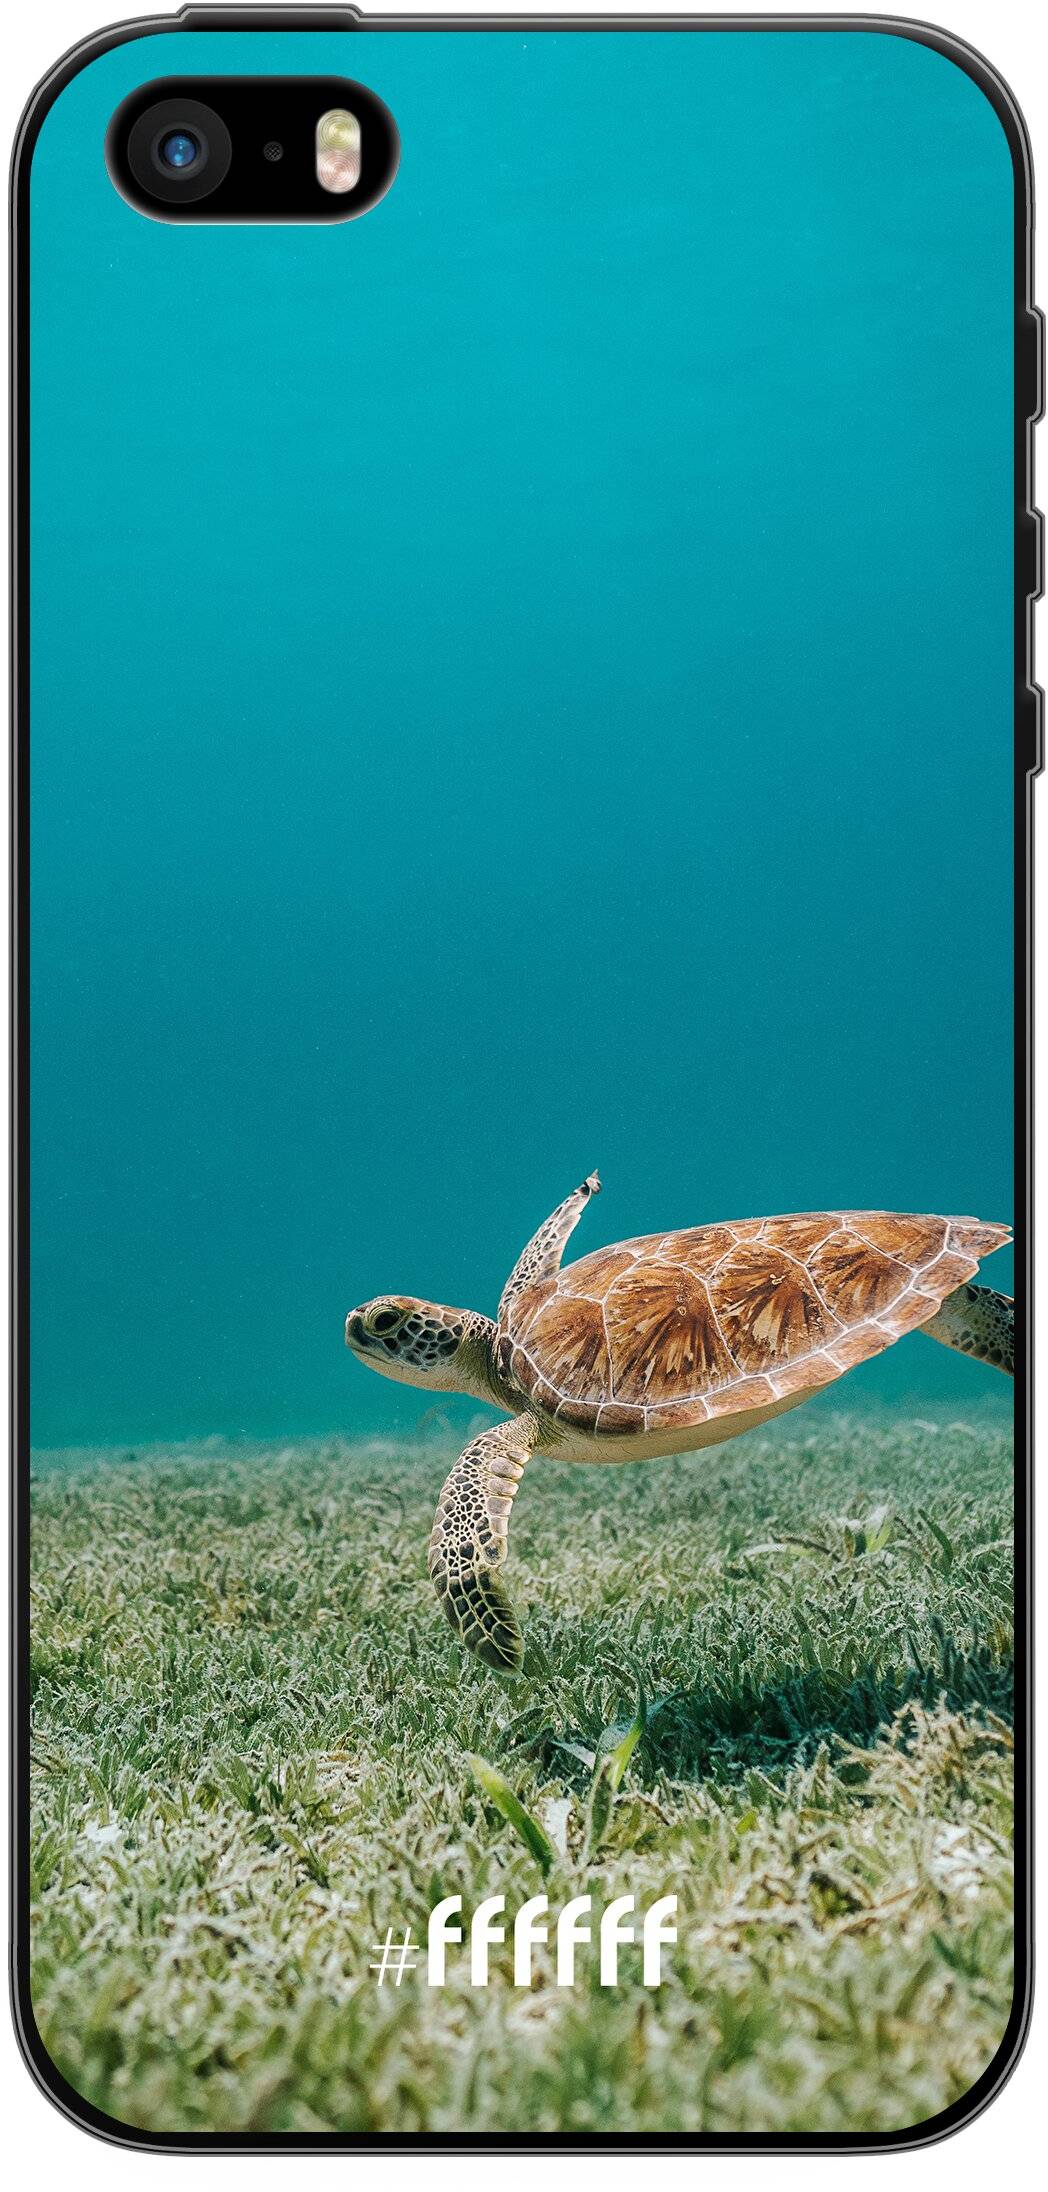 Turtle iPhone 5s